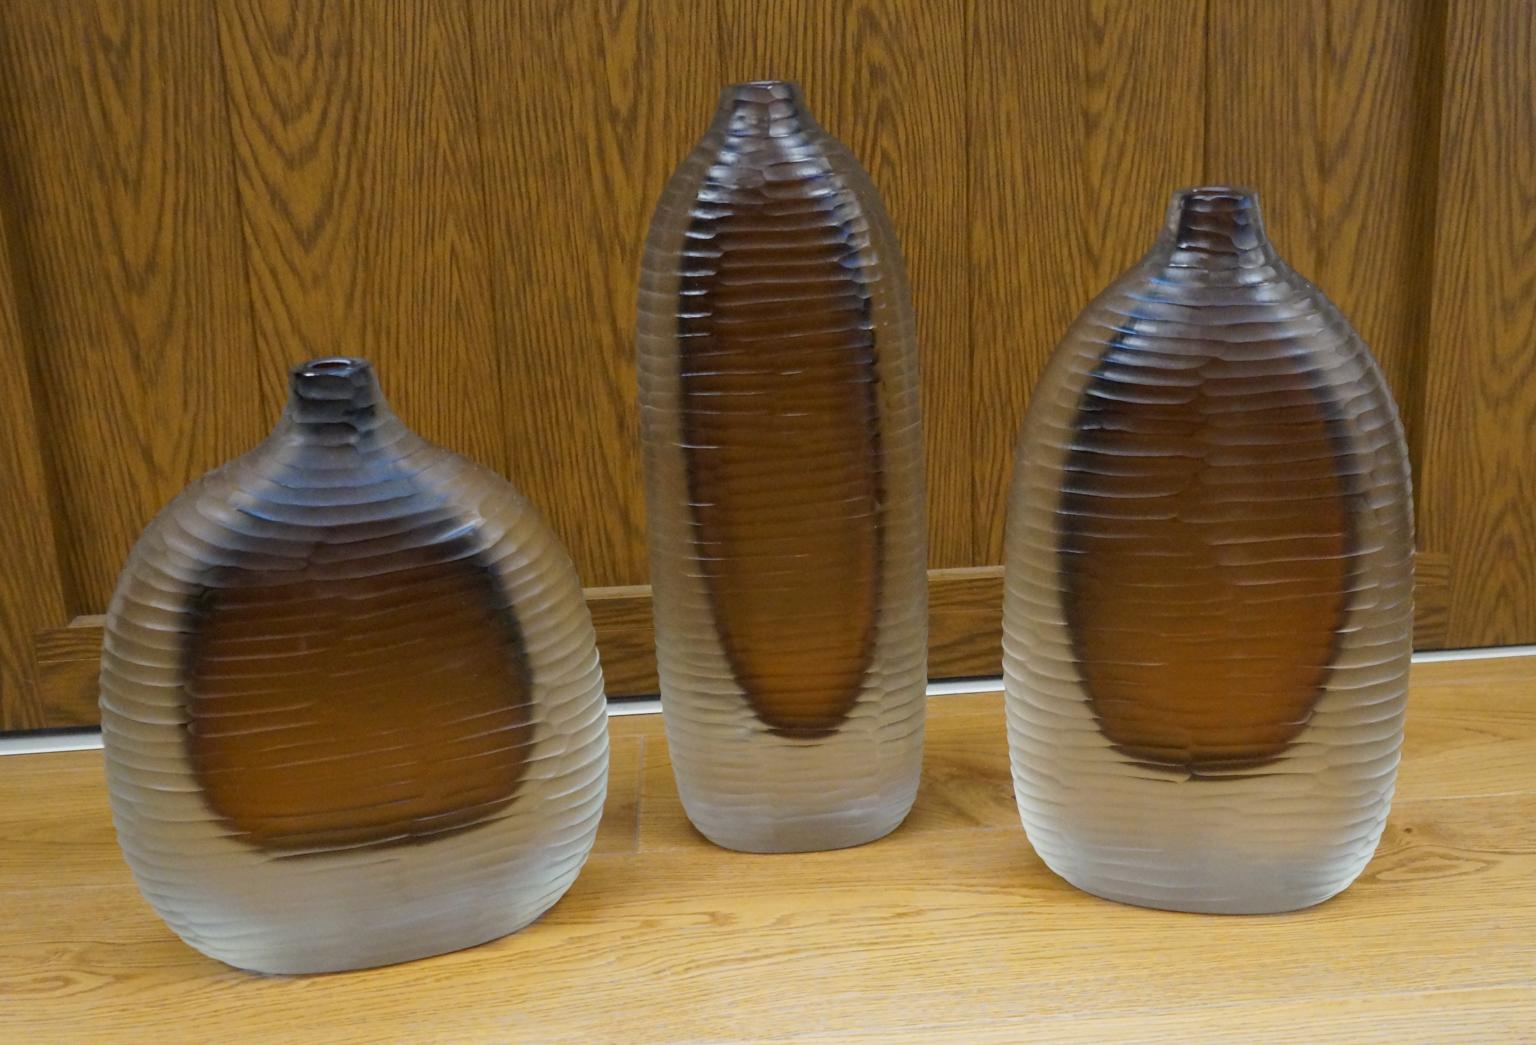 Trois vases en verre soufflé de Murano Molato (gravé), couleur claire et intérieur ambré.
Pour réaliser ce travail, nous avons besoin de deux processus différents : le premier, pour modeler le vase chaud en lui donnant forme et couleur. 
La